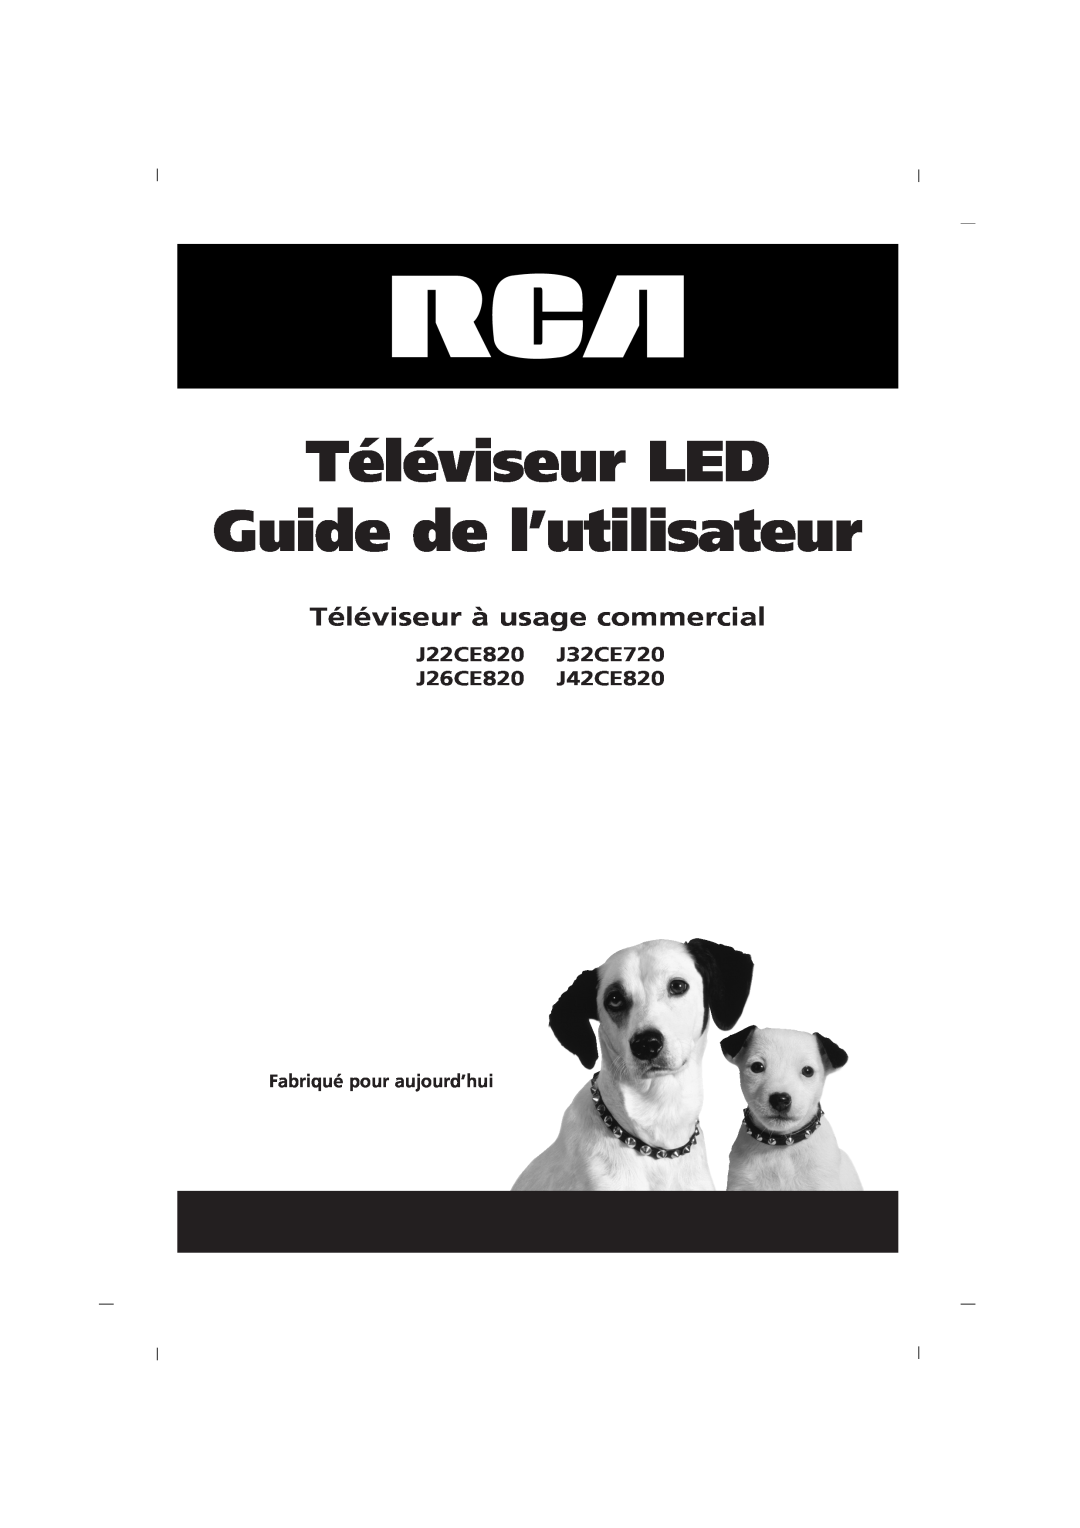 RCA J42CE820, J32CE720 Téléviseur LED Guide de l’utilisateur, Téléviseur à usage commercial, Fabriqué pour aujourd’hui 